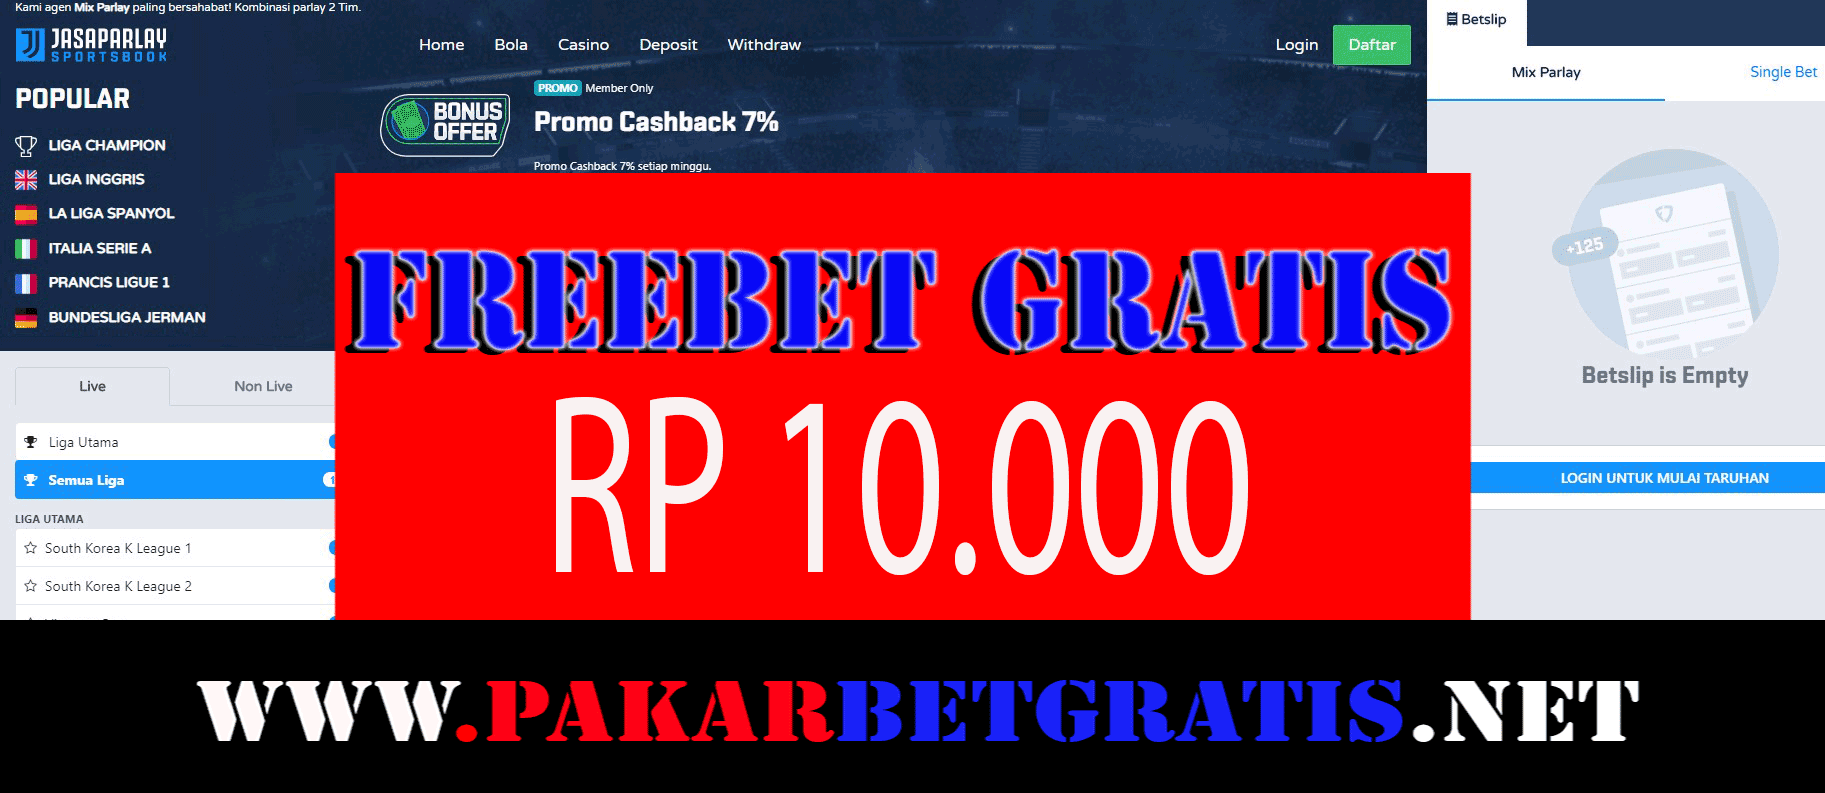 Freebet Gratis Rp 10.000 Tanpa Deposit